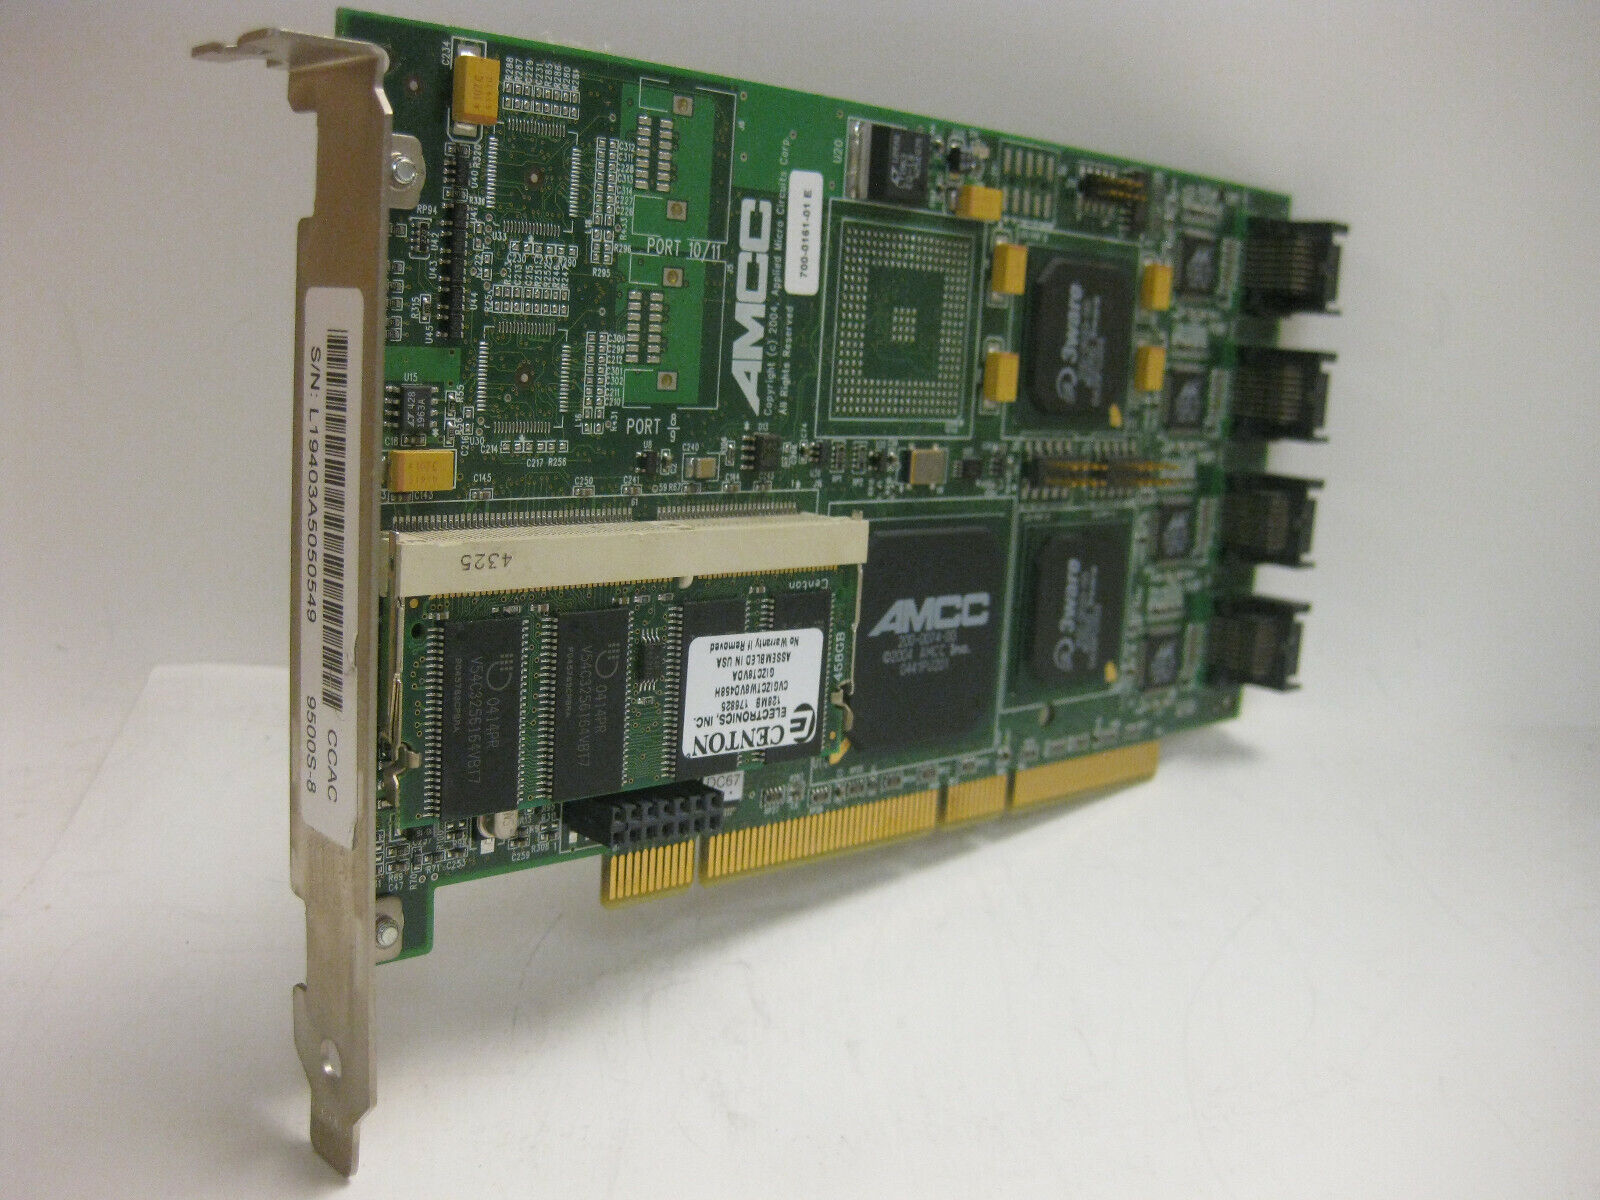 RAID CARD  3Ware AMCC 9500S-8 PCI-X 8 Port SATA RAID Controller Card Full Height